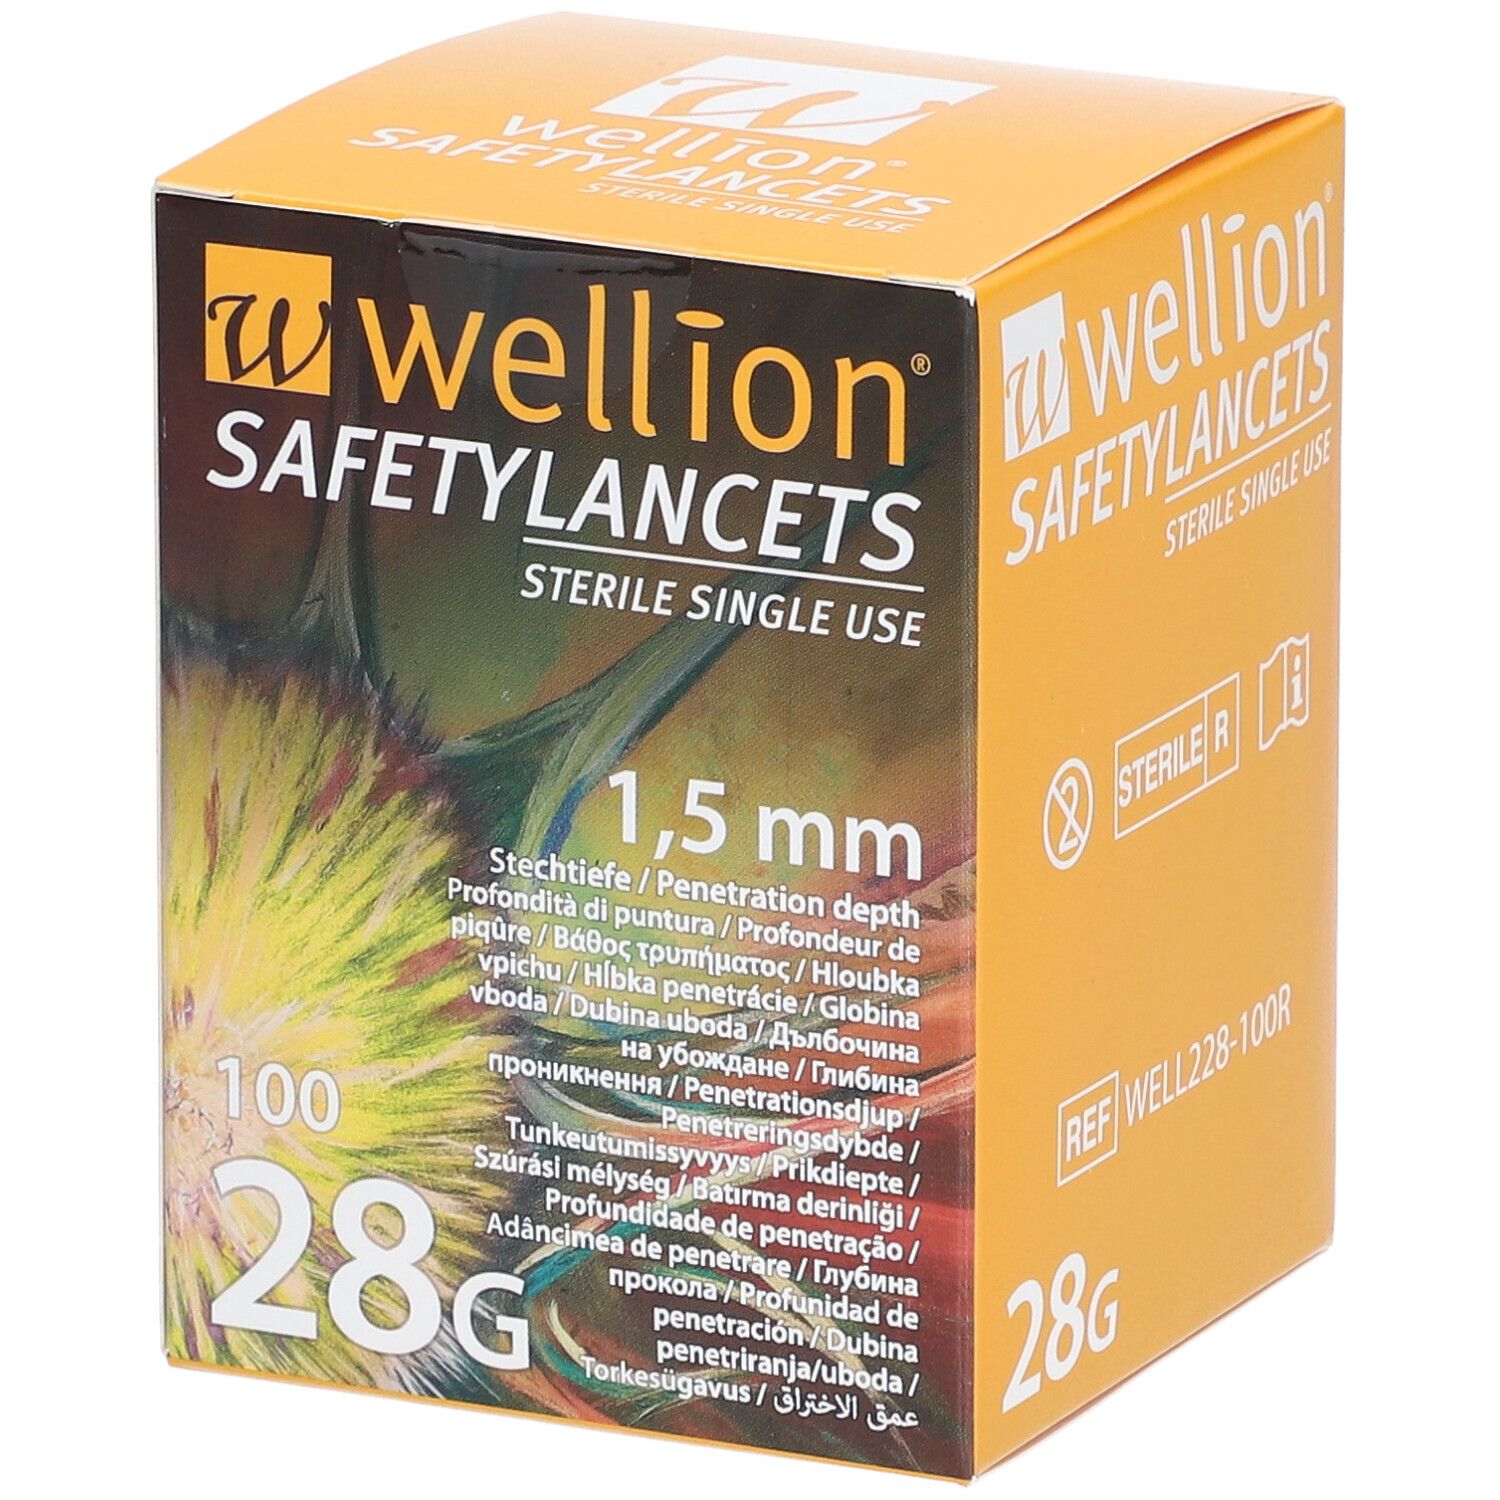 Wellion Safetylancets 28 G 1,5 mm